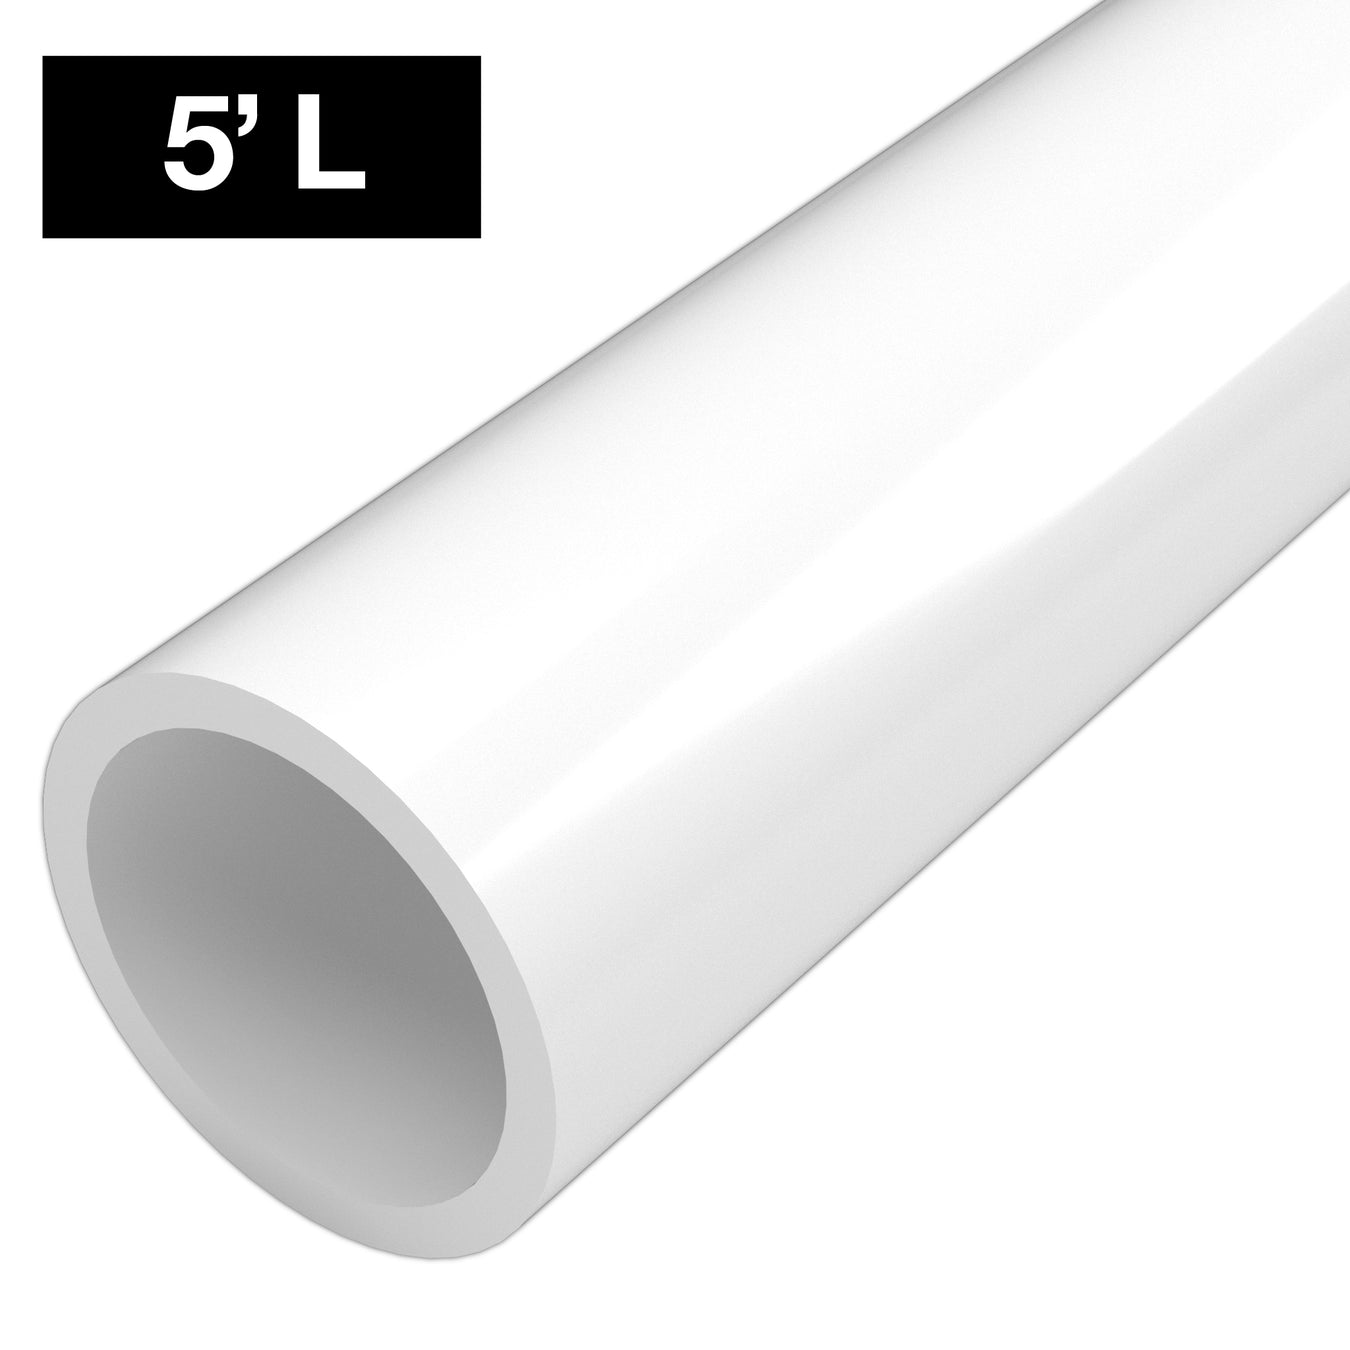 1-1/2 in. PVC Pipe